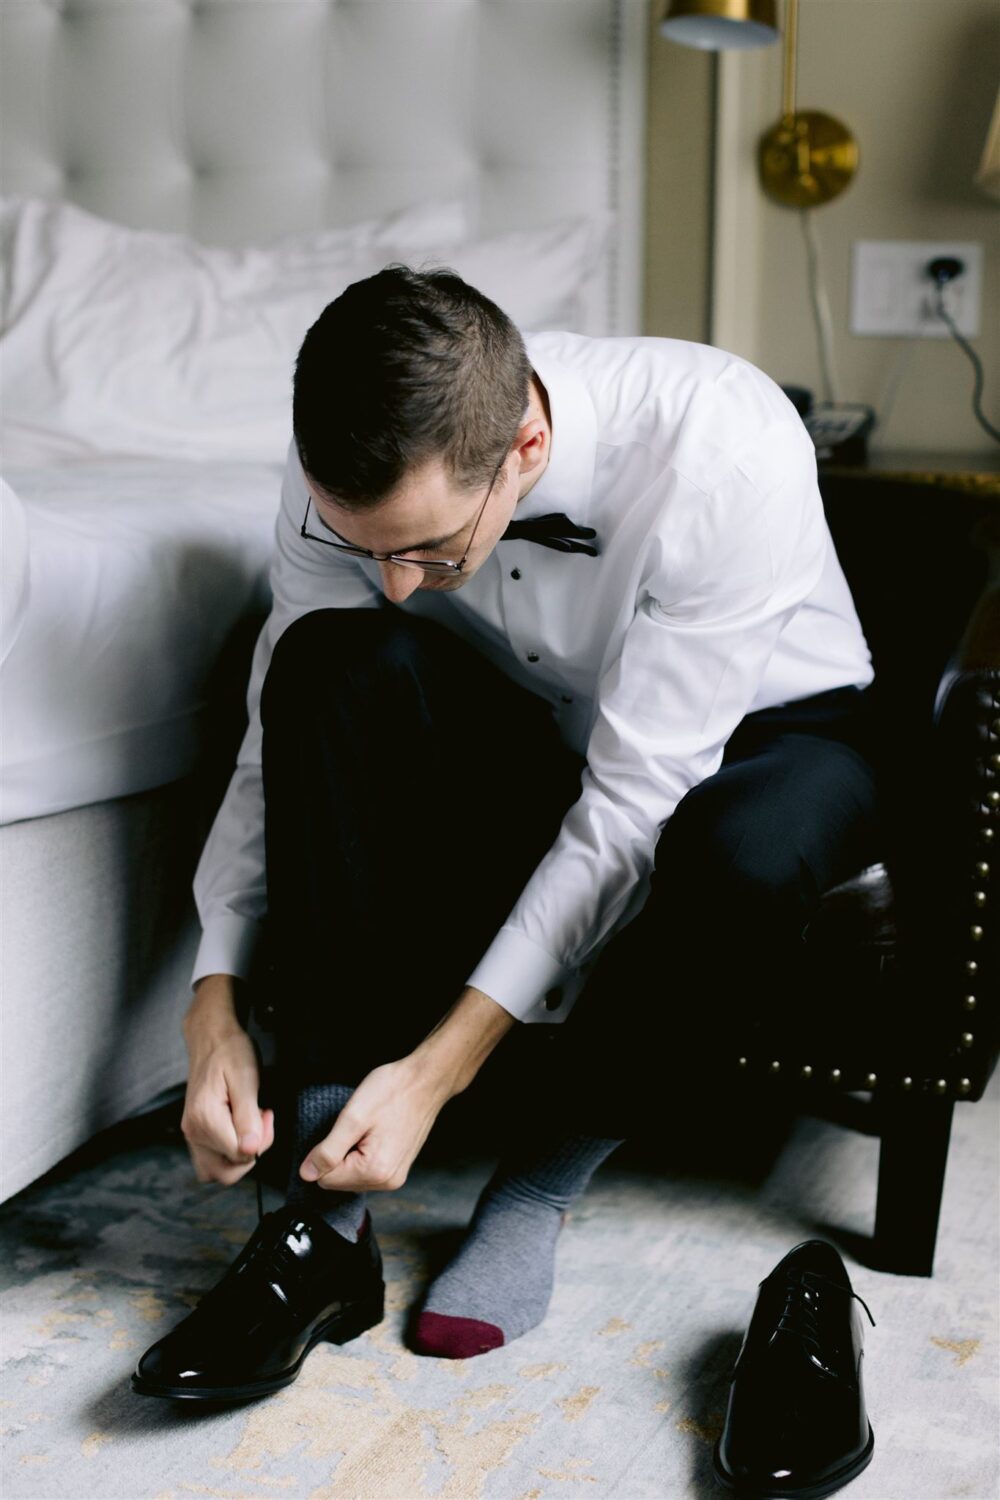 groom tying shoes getting ready photos modern wedding